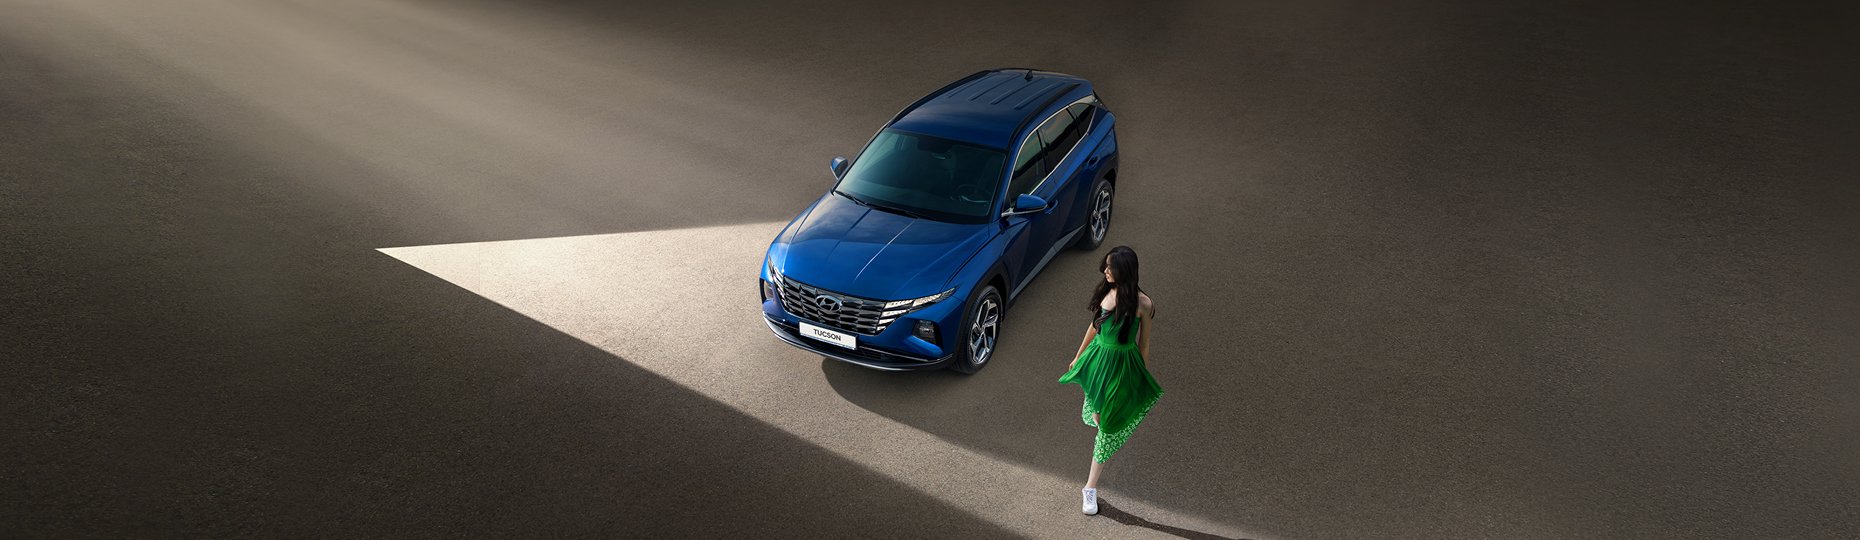 Комфорт нового Hyundai Tucson | Официальный дилер в Алматы